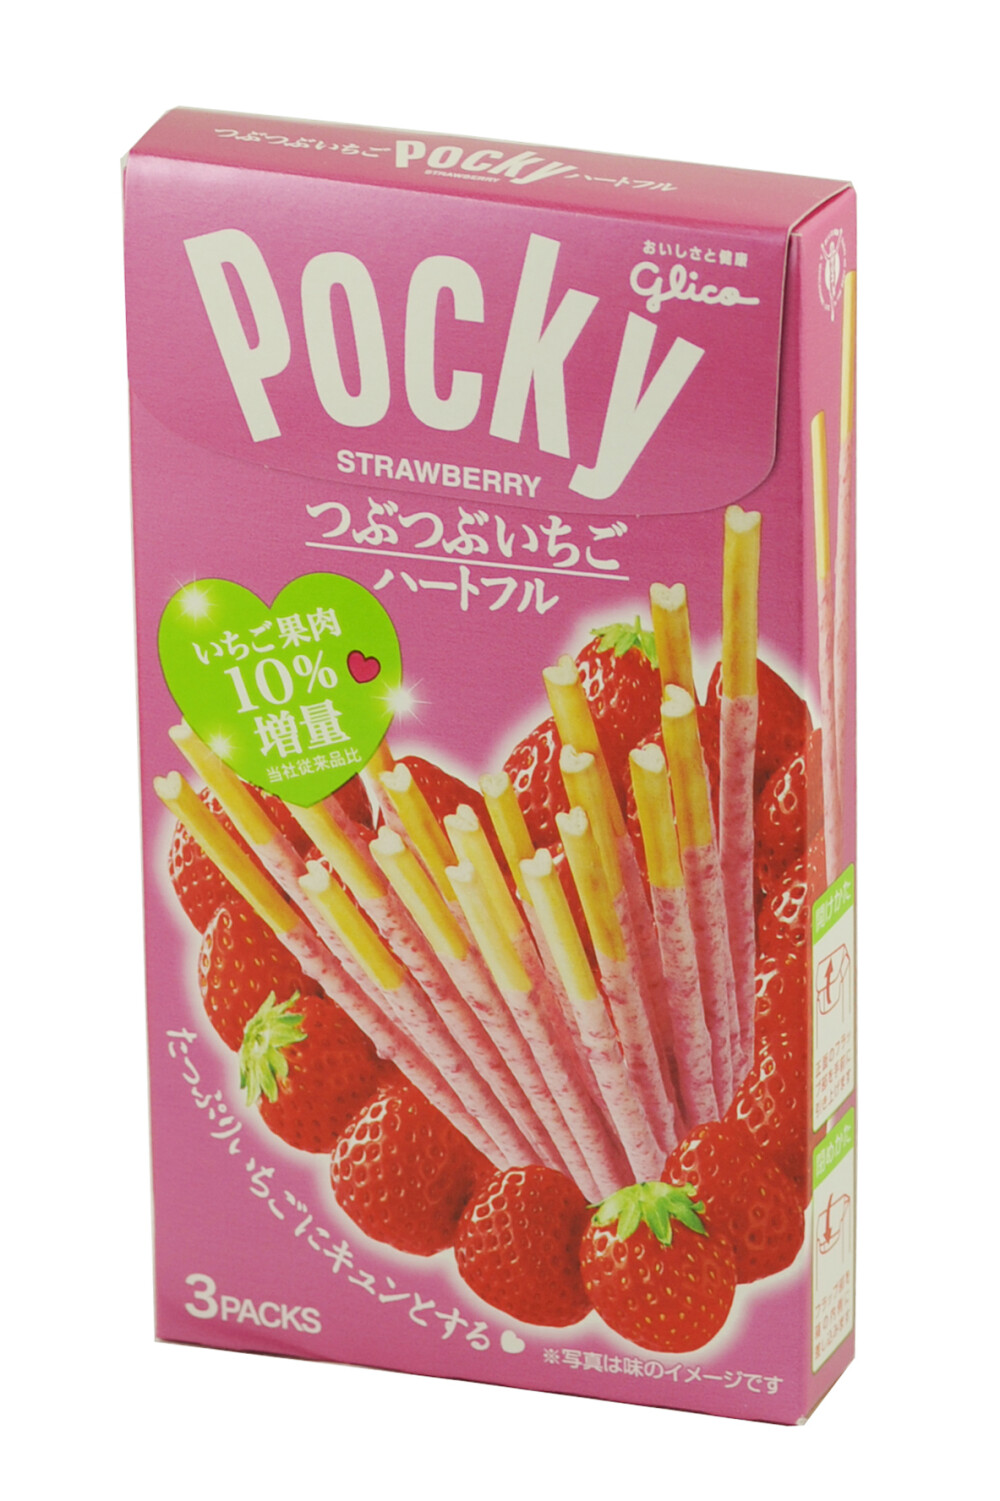 日本原装进口零食品 格力高 草莓味饼干棒 54.9g